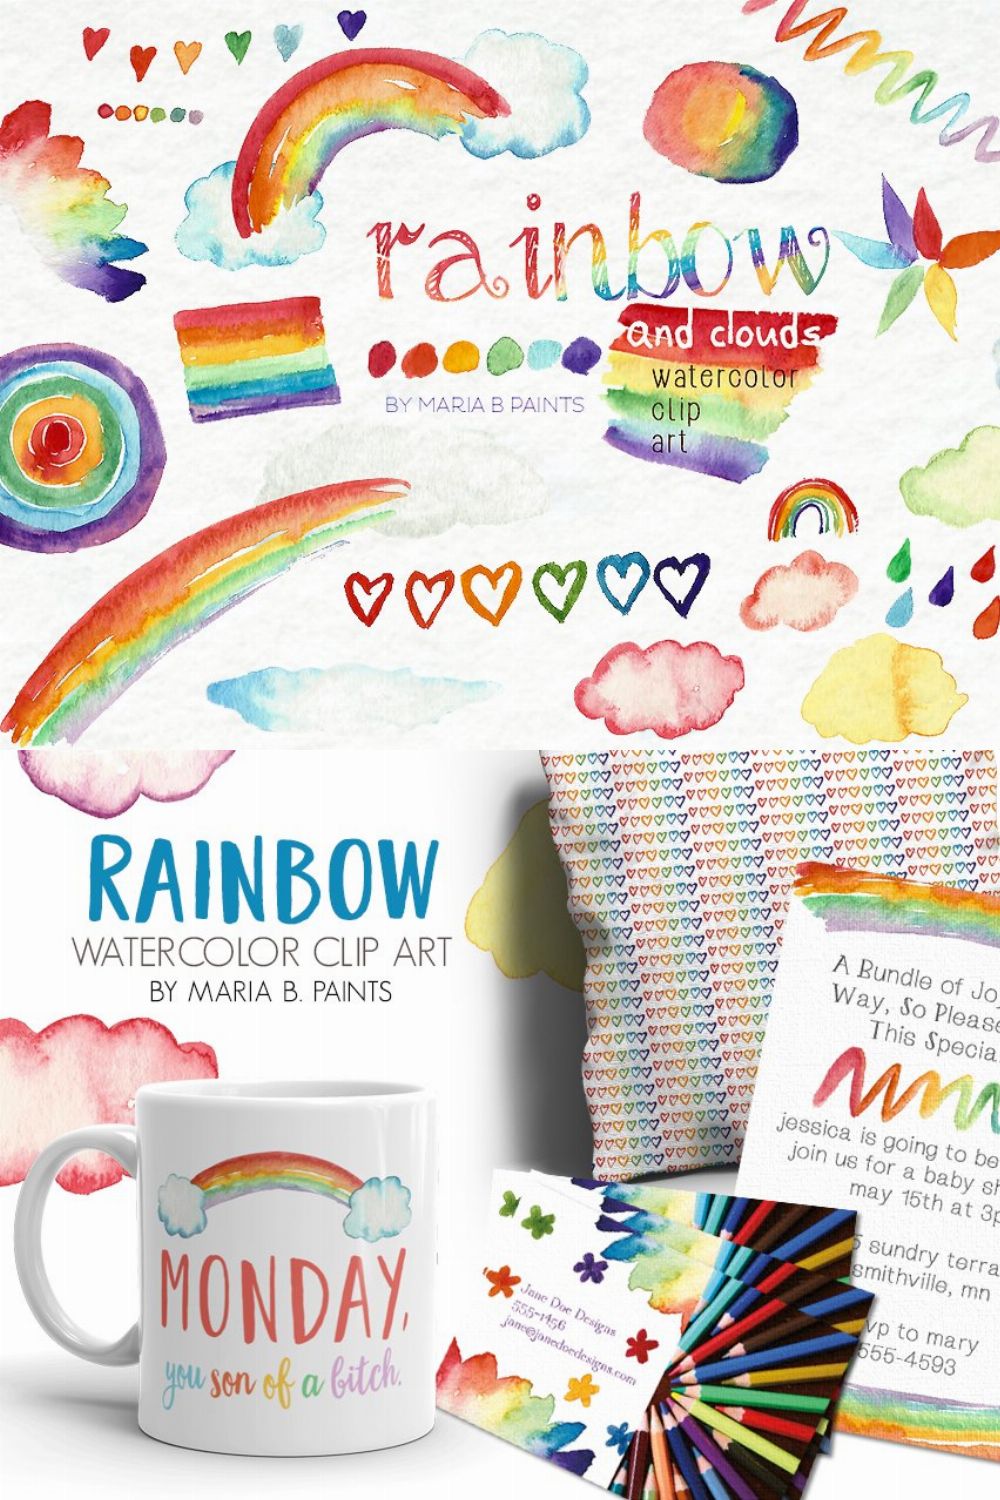 Watercolor Clip Art - Rainbow, Cloud pinterest preview image.